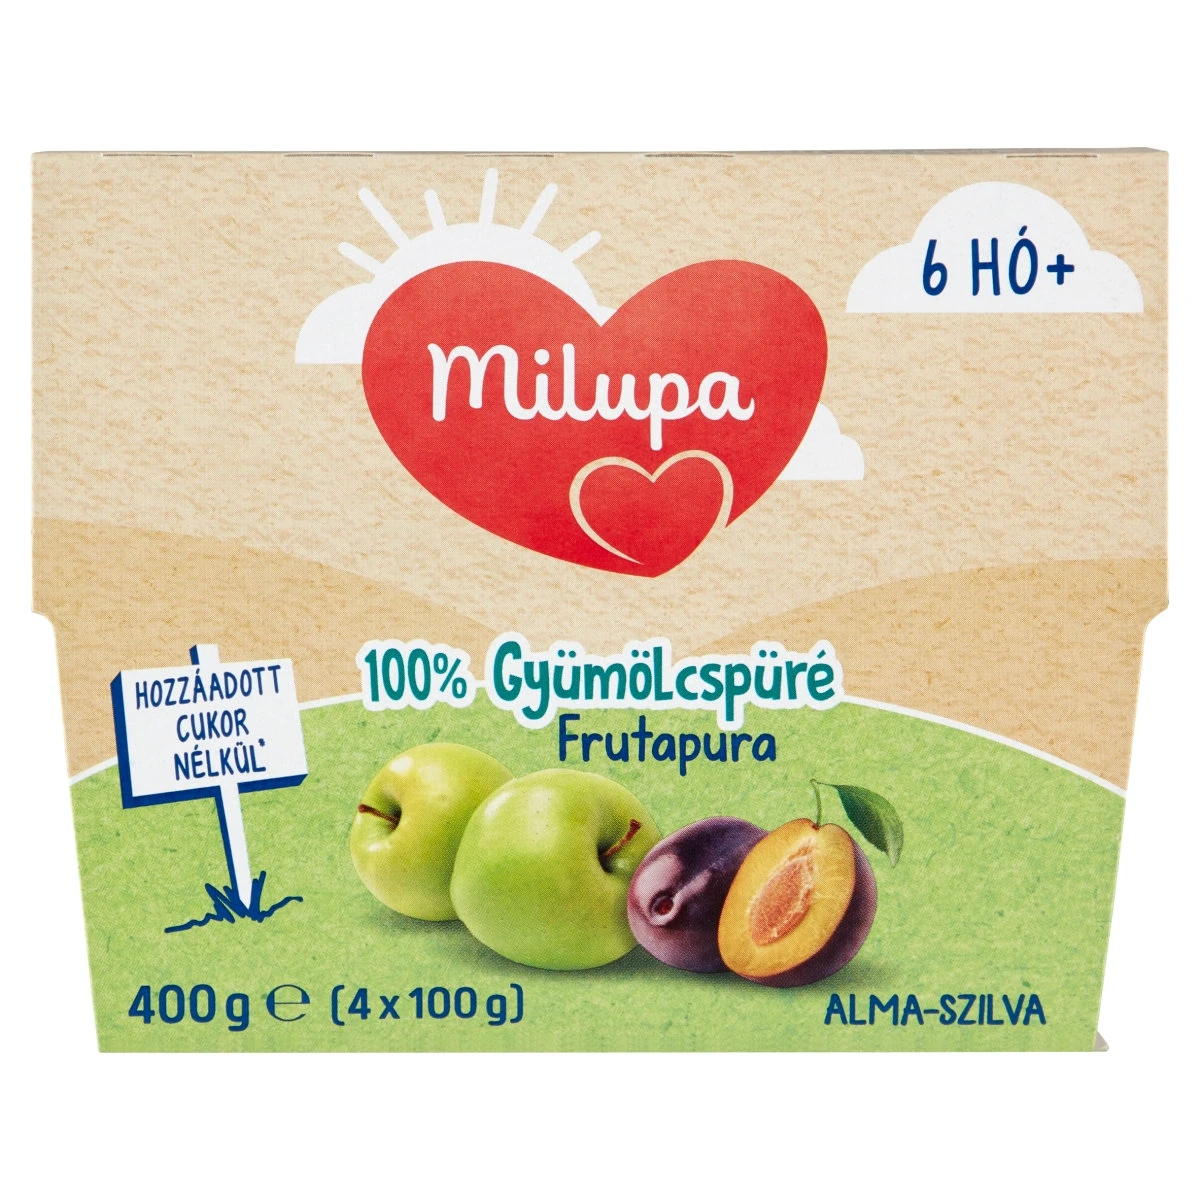 Milupa Frutapura gyümölcspüré szilva + alma 6 hónapos kortól, 400 g